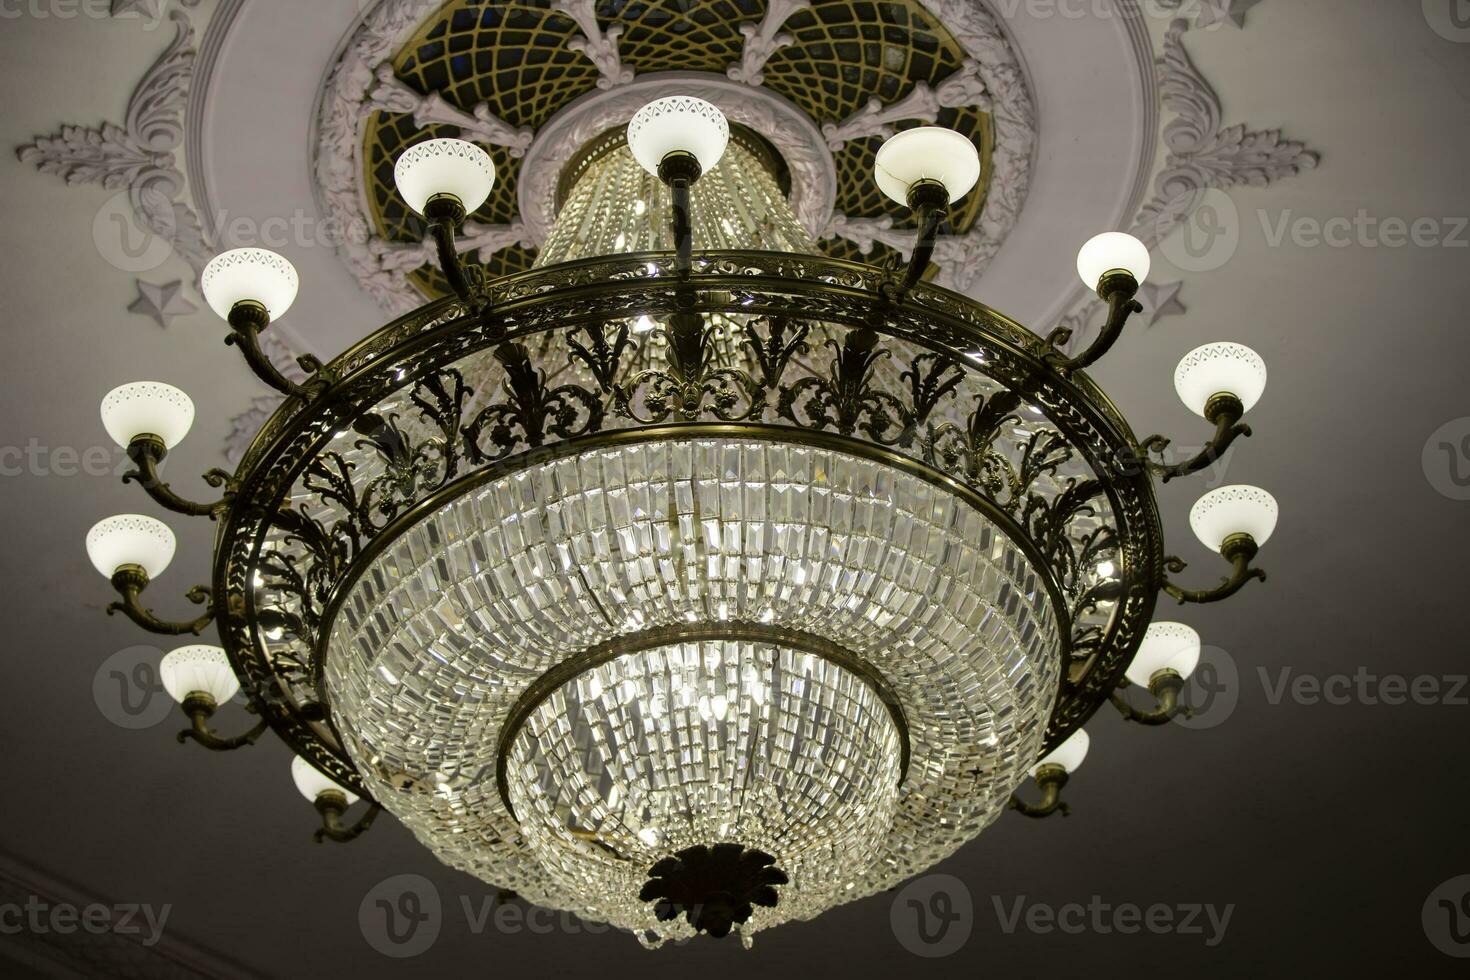 allí es un hermosa teatro candelabro en el techo y un costoso vaso lámpara. foto